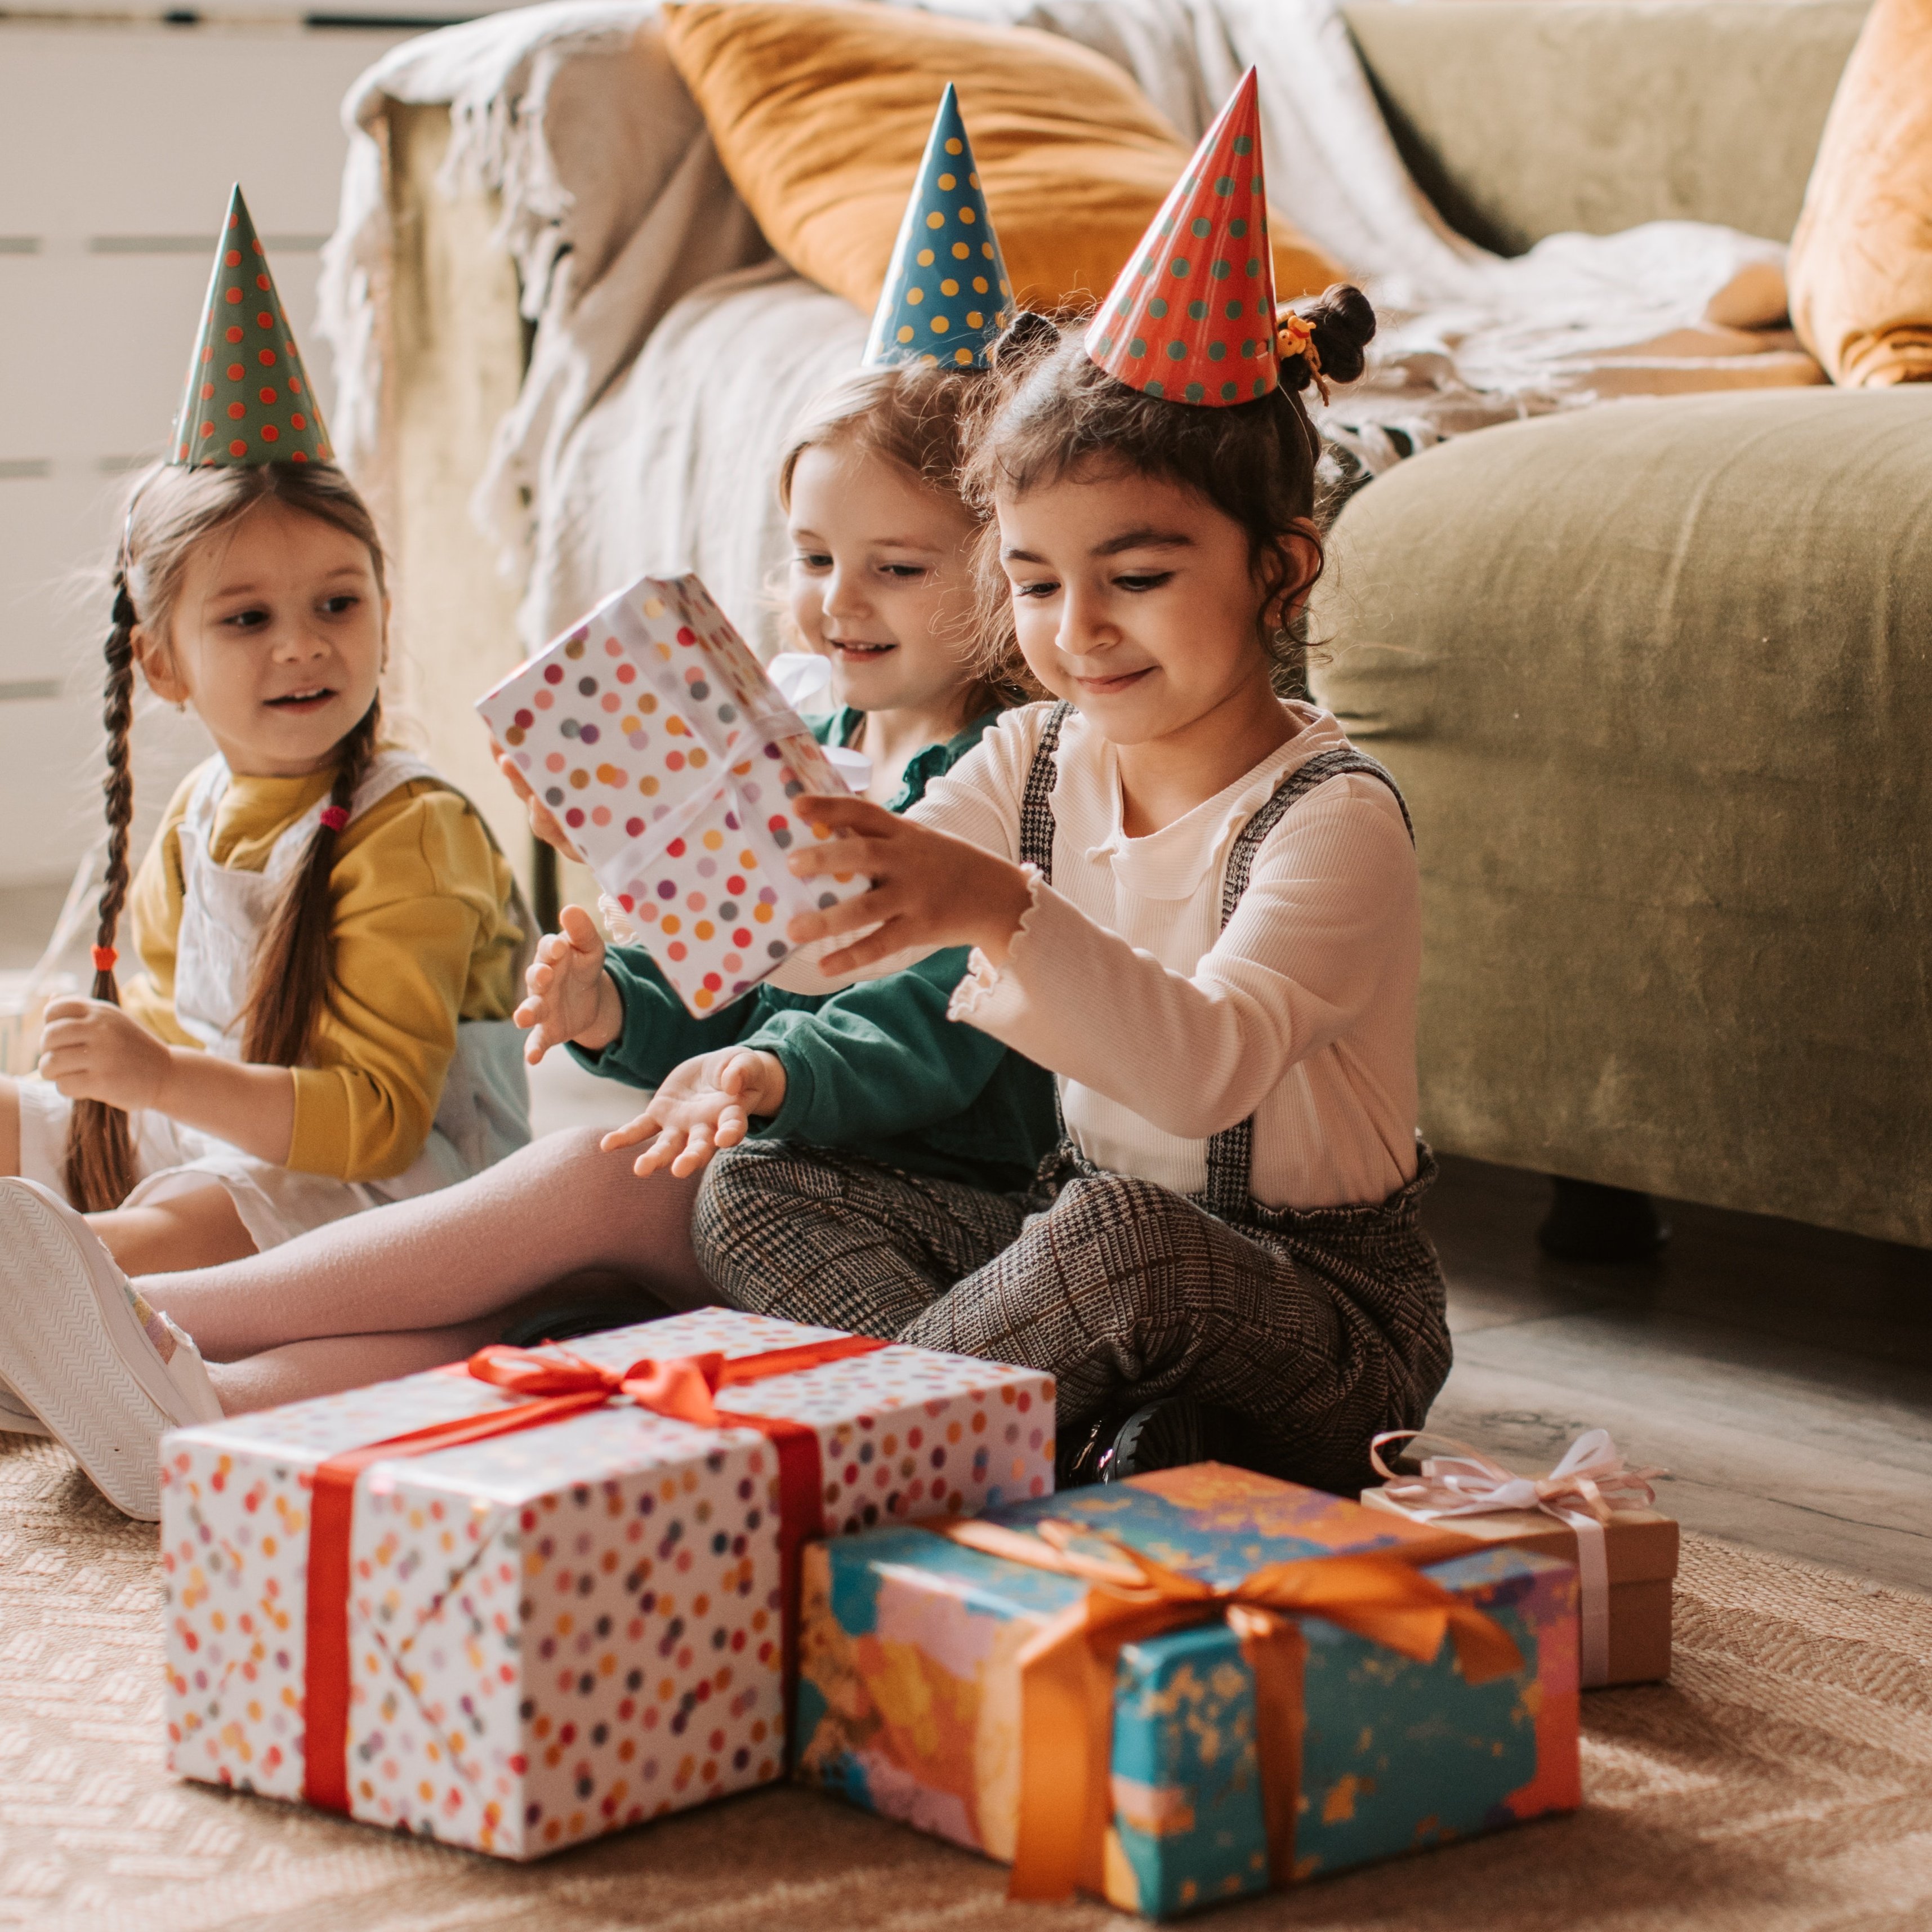 5 pomysłów na prezent dla dzieci – zabawki drewniane do 100 zł